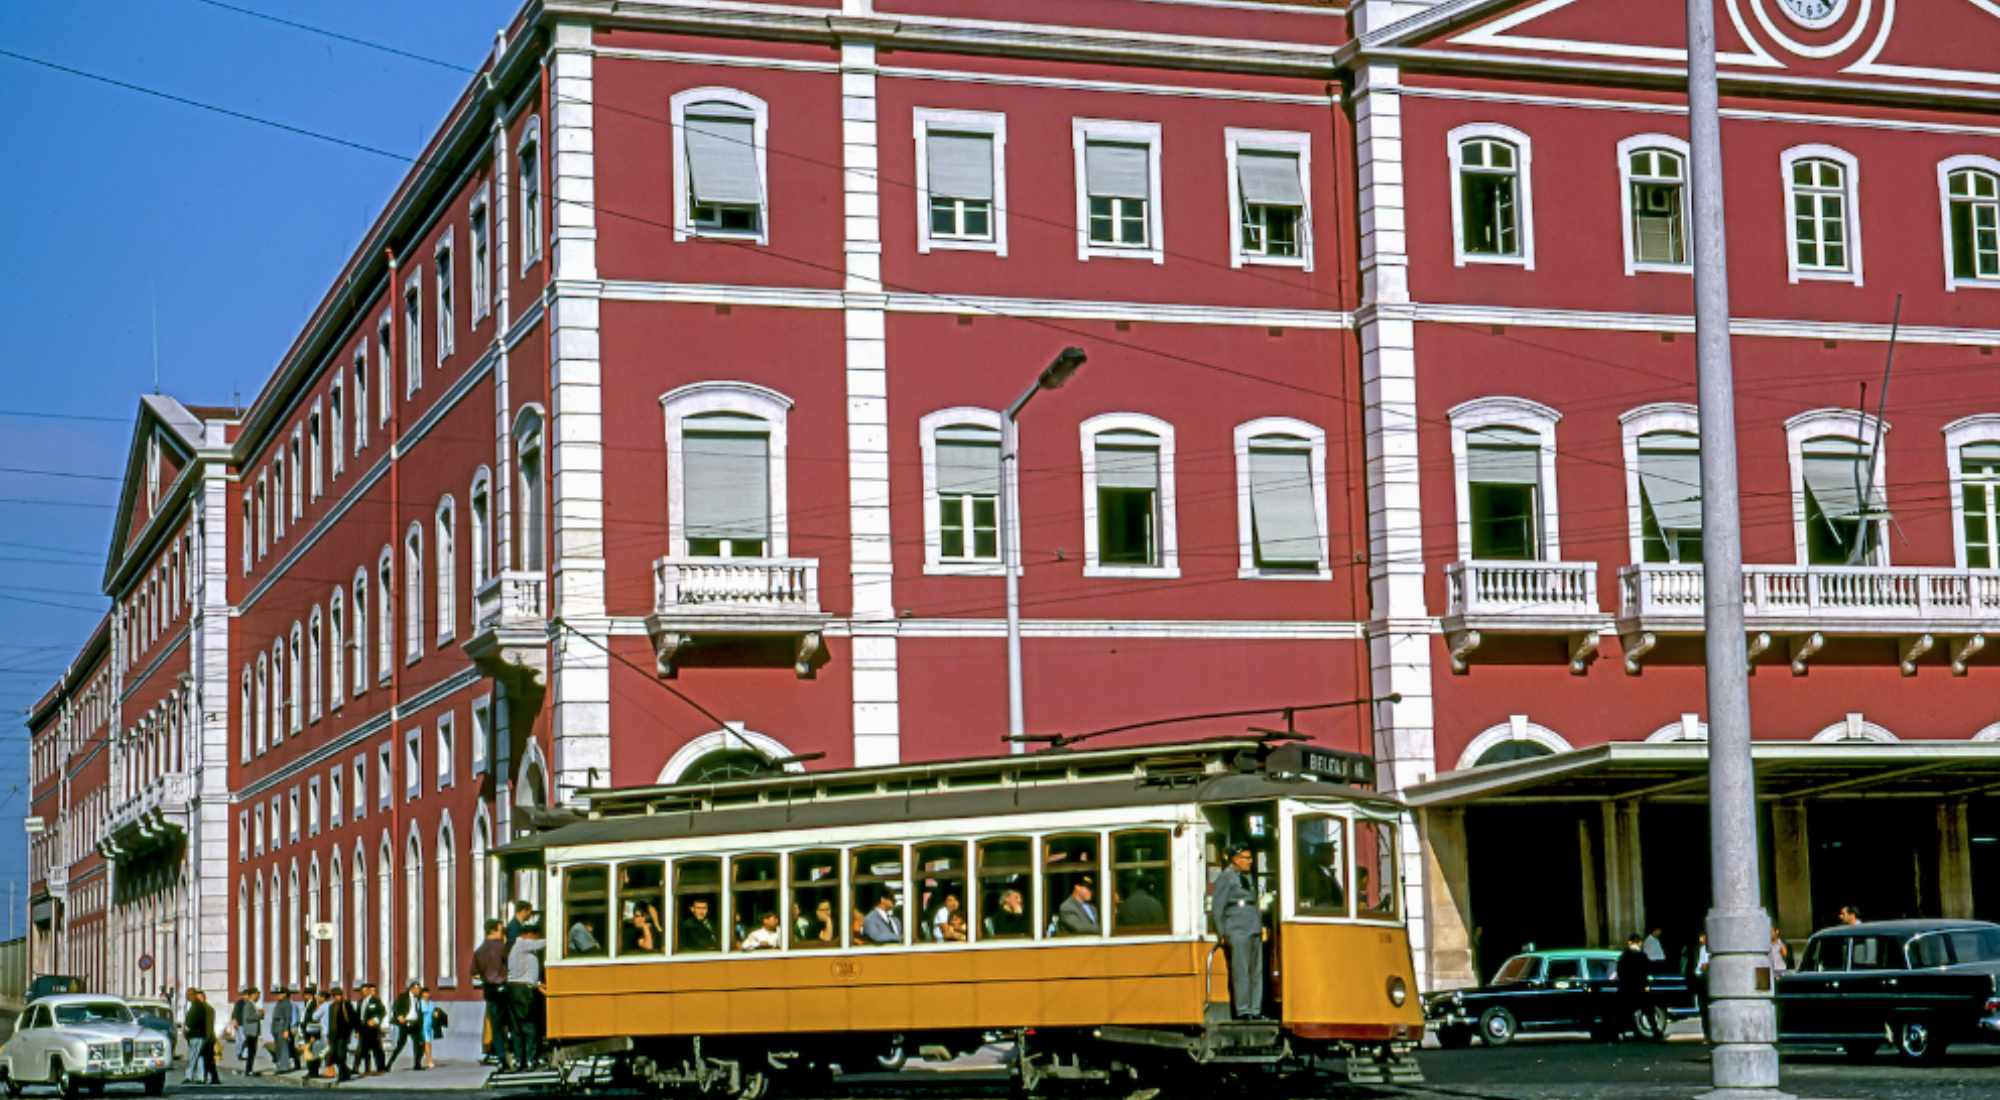 CIN pinta a história de monumentos icónicos  na cidade de Lisboa